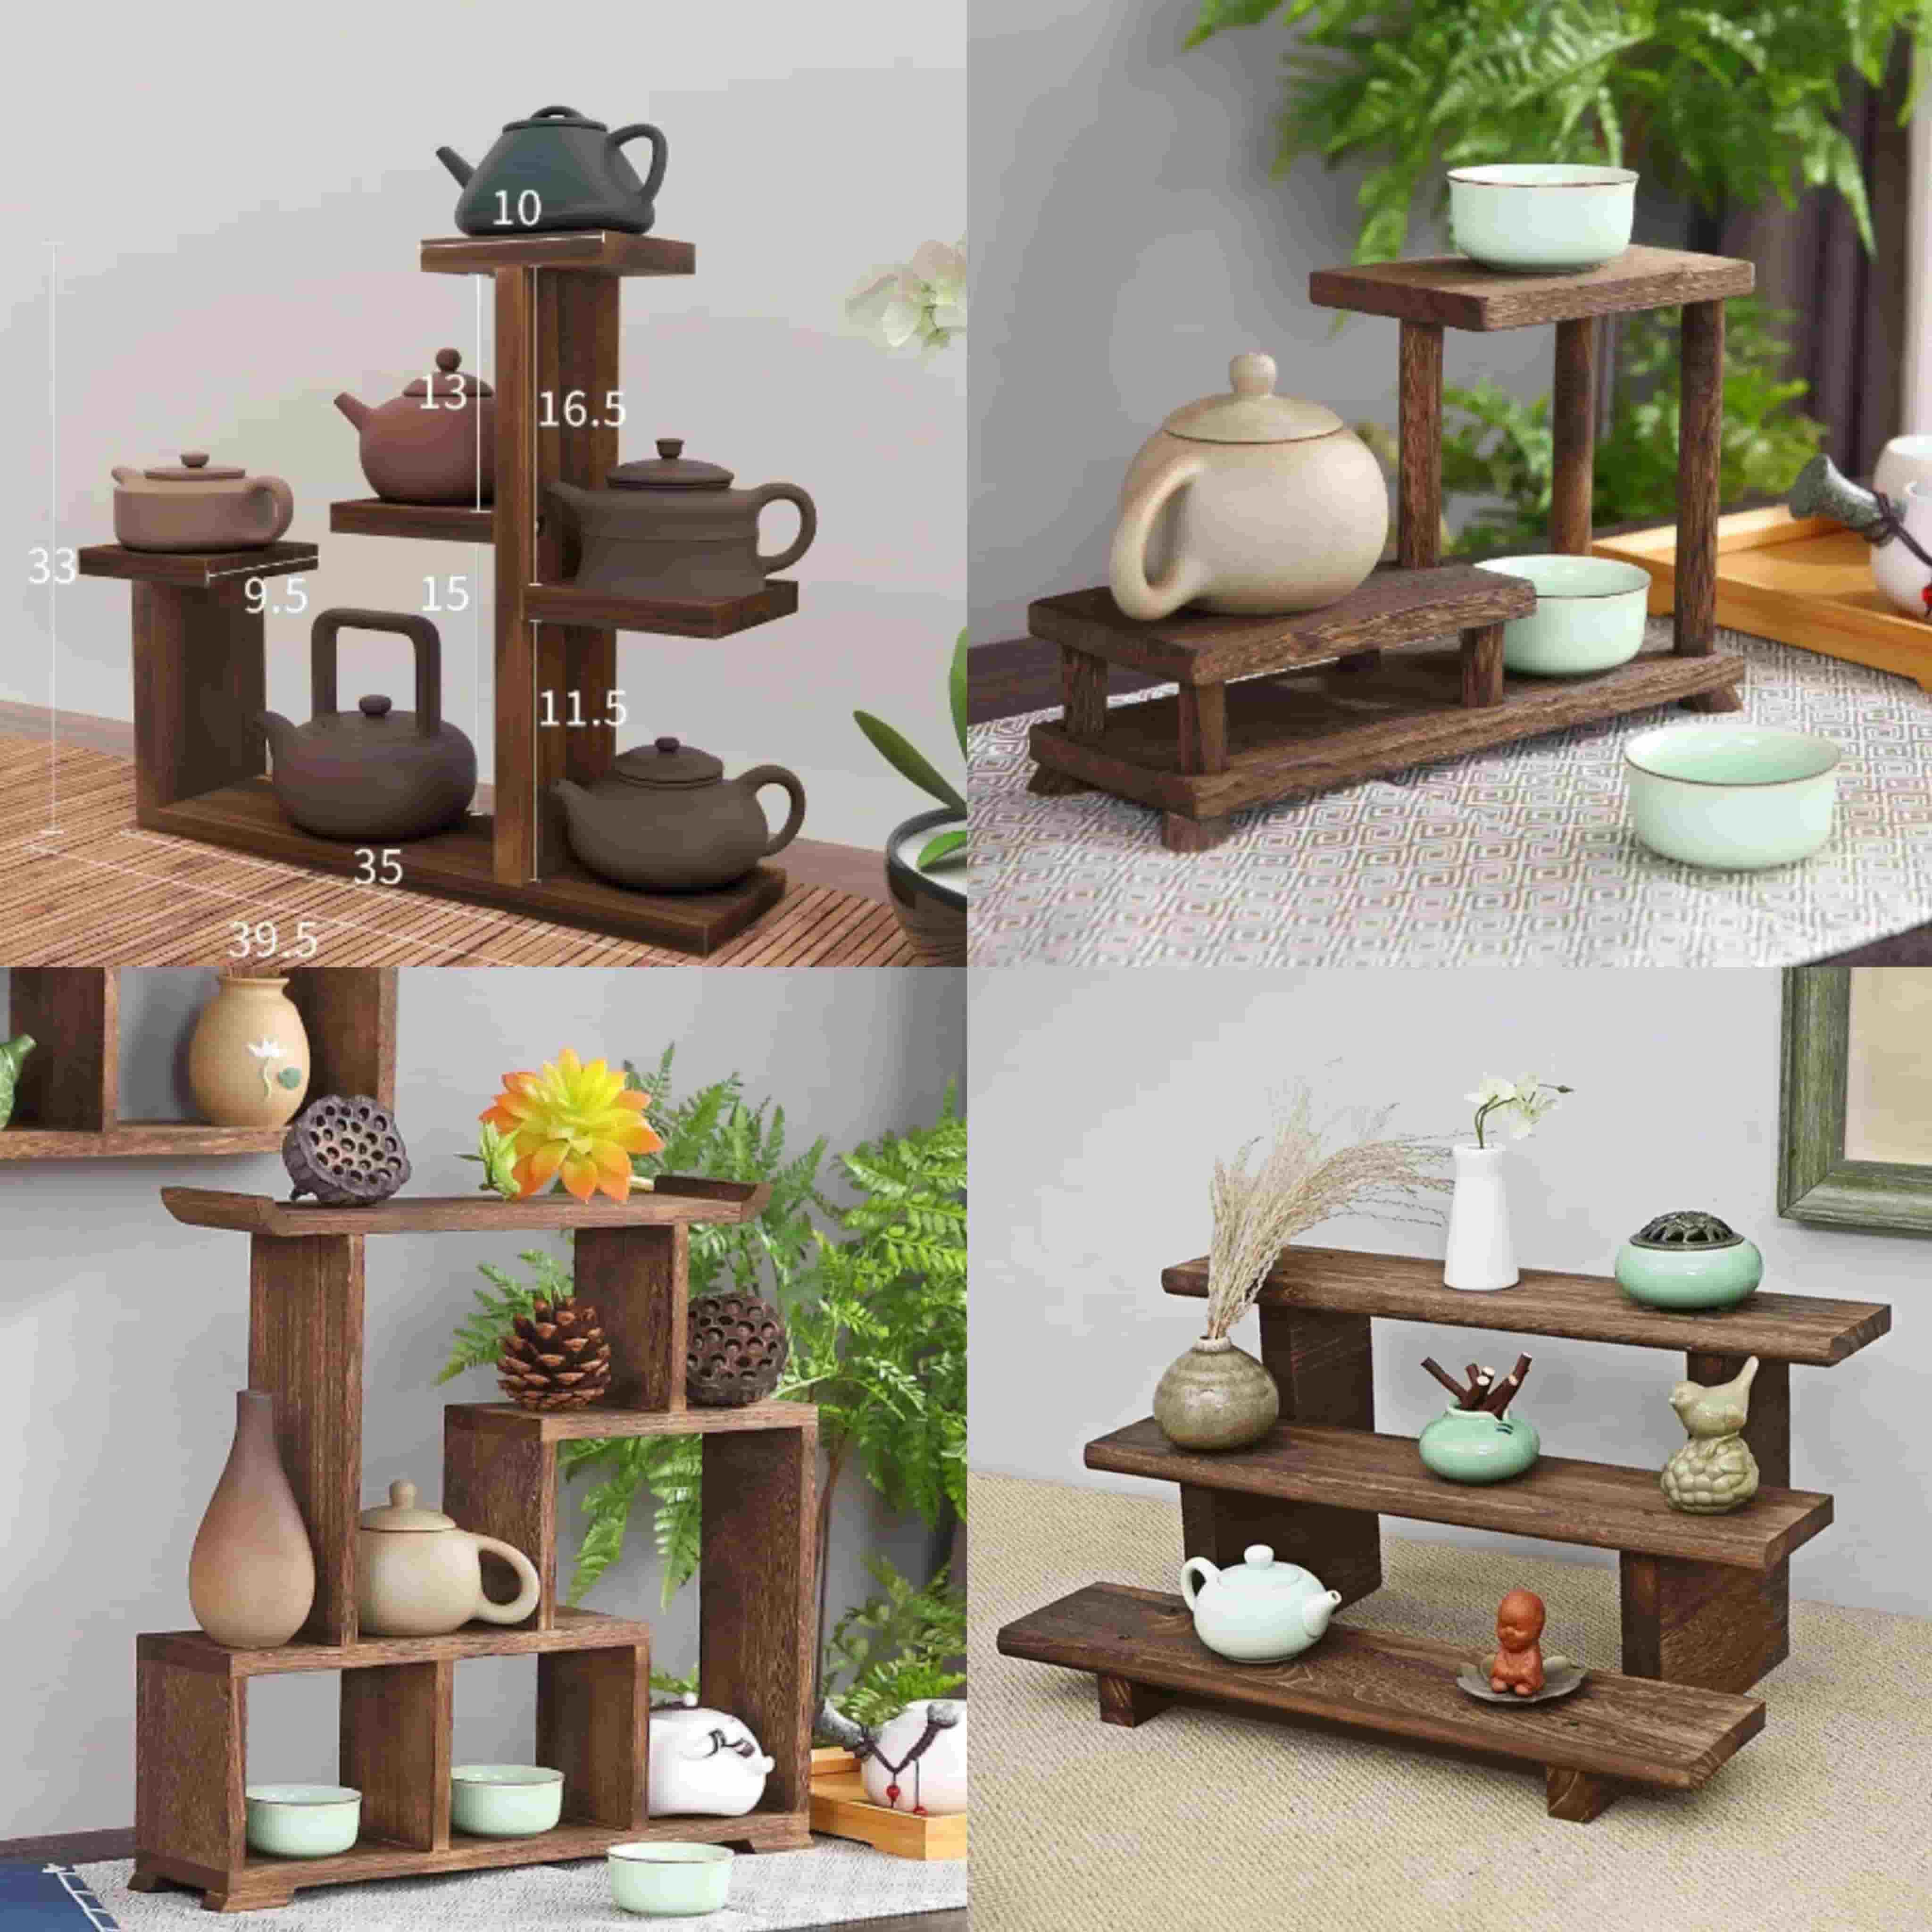 teacup shelves